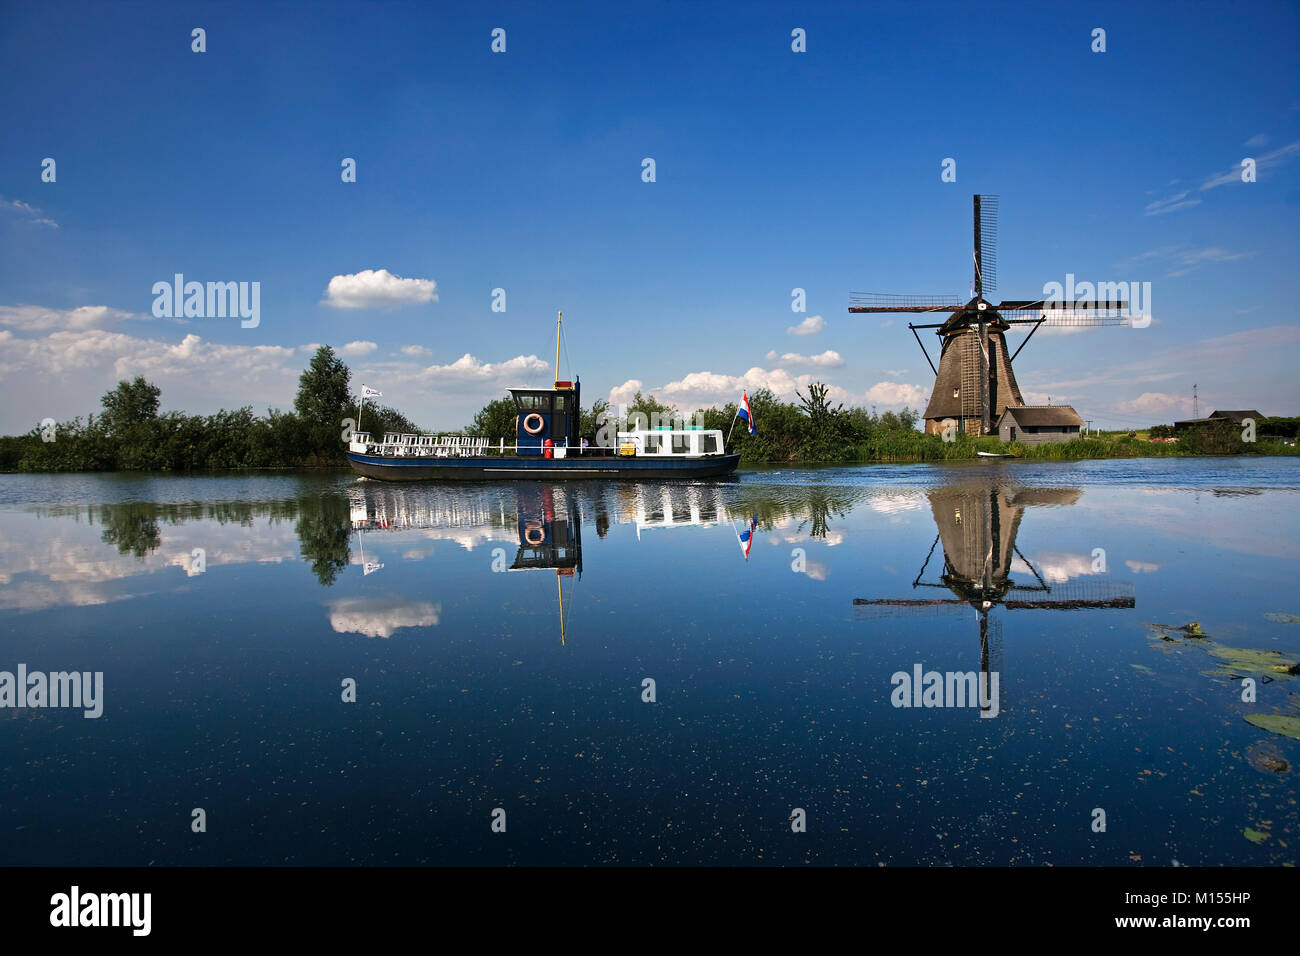 Les Pays-Bas, Kinderdijk près de Rotterdam. Les moulins à vent en polder. Unesco World Heritage Site. Banque D'Images